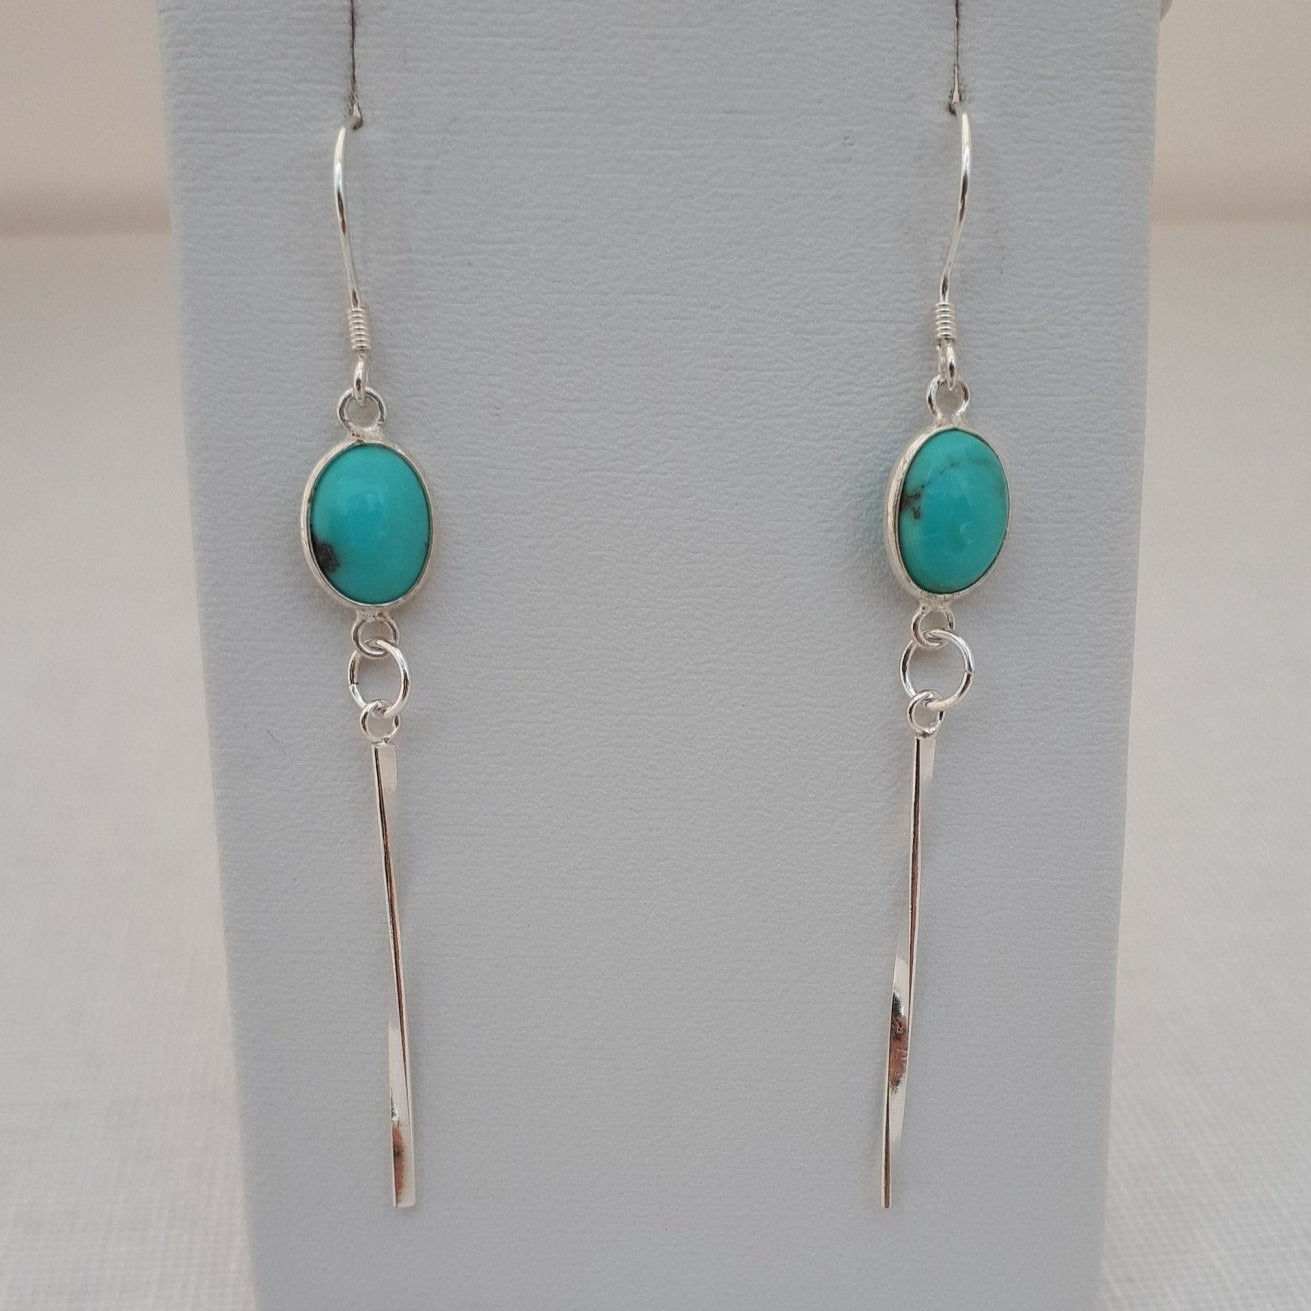 925 Sterling Silver Turquoise Oval Tassel Earrings. - JOANNE MASSEY ARTISAN JEWELLERY